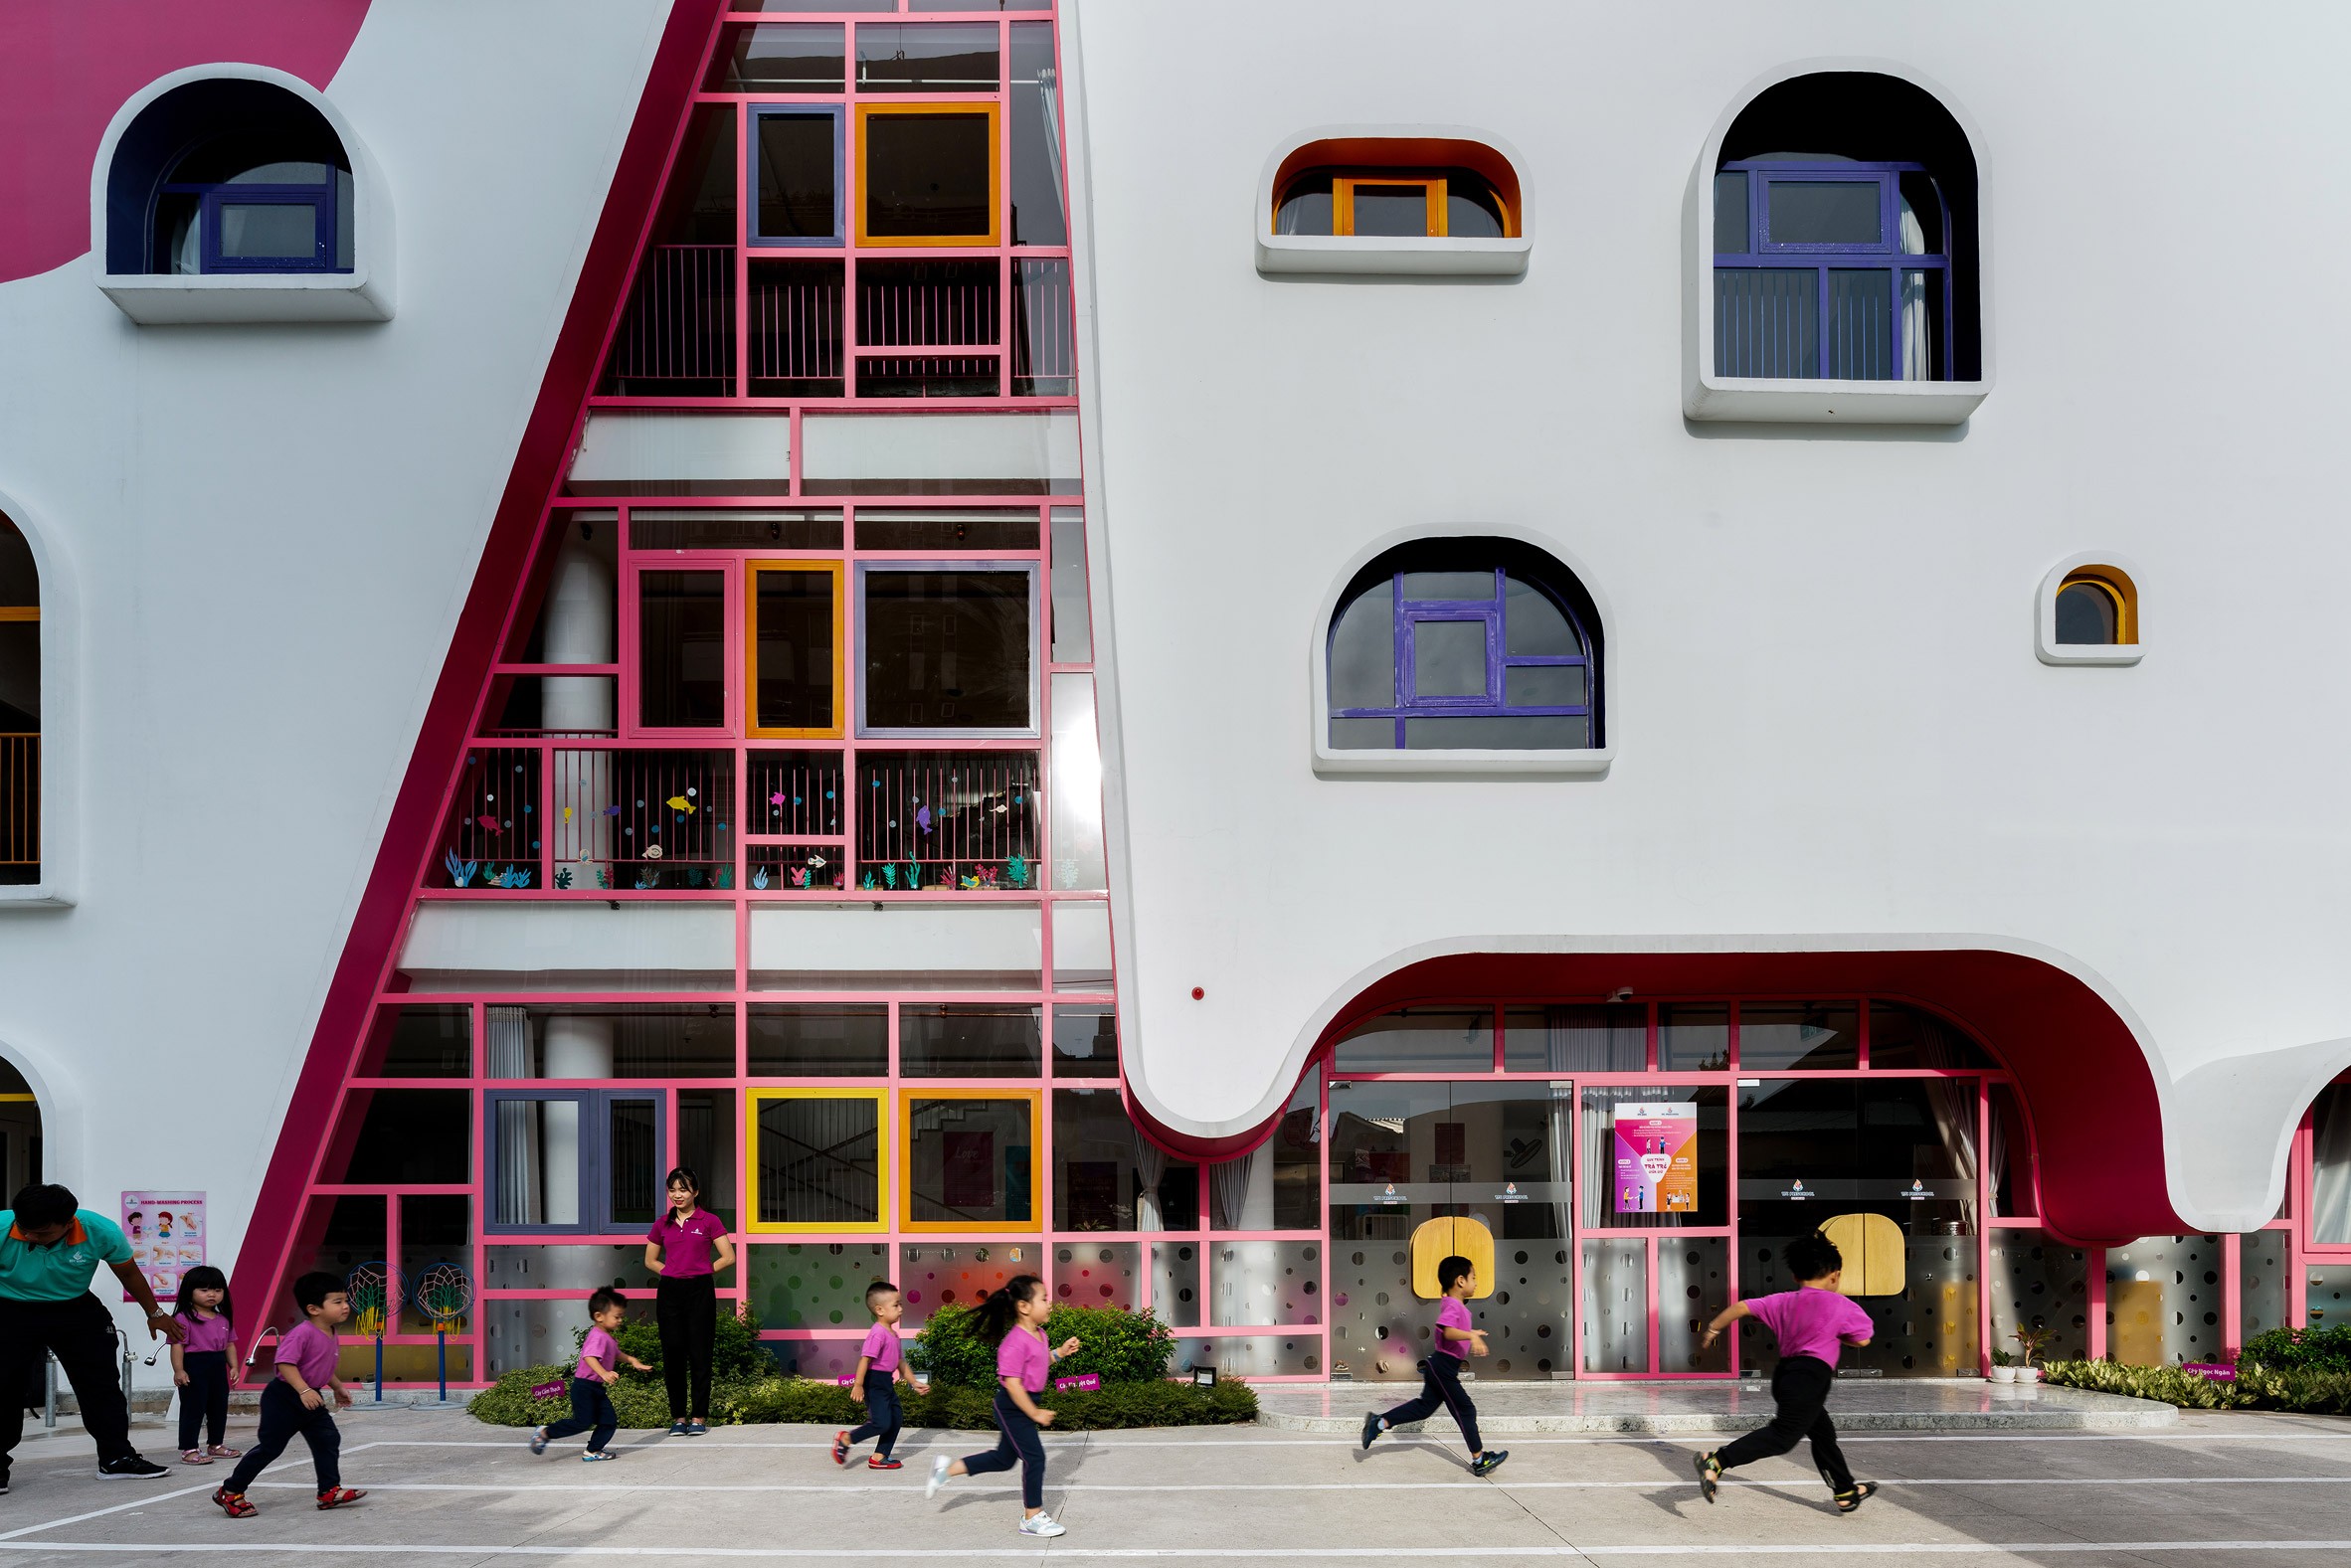 Escola com fachada colorida se destaca na paisagem vietnamita (Foto: Divulgação)